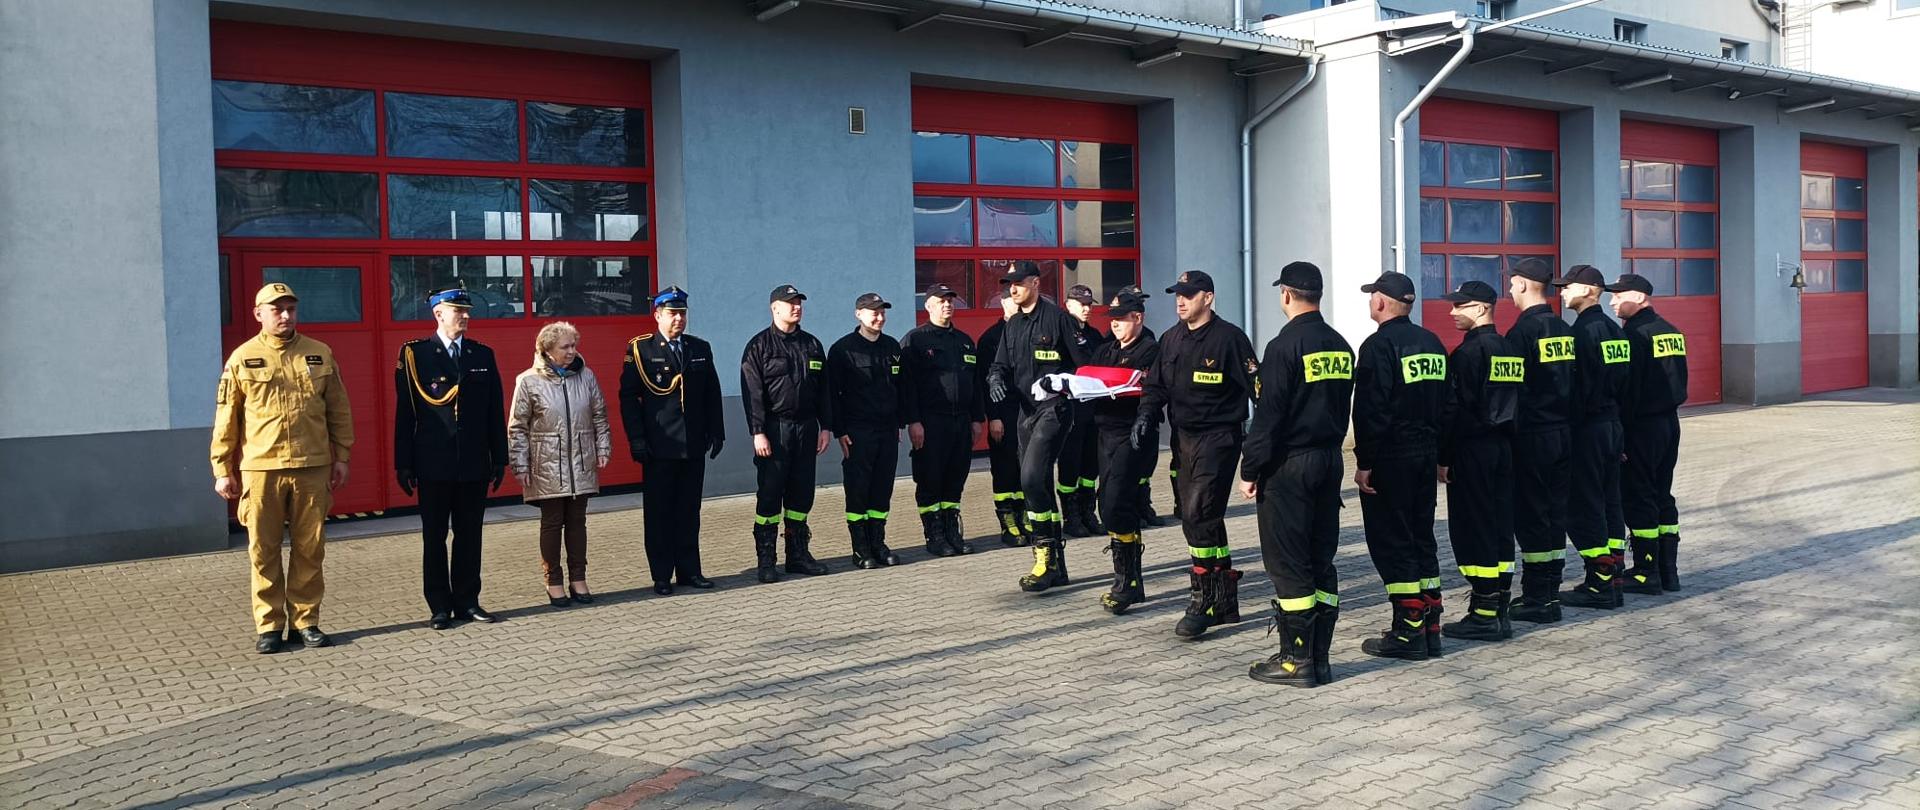 Na zdjęciu widoczni funkcjonariusze oraz pracownicy cywilni Komendy Powiatowej Państwowej Straży Pożarnej w Lęborku podczas uroczystego podniesienia flagi państwowej na maszt.